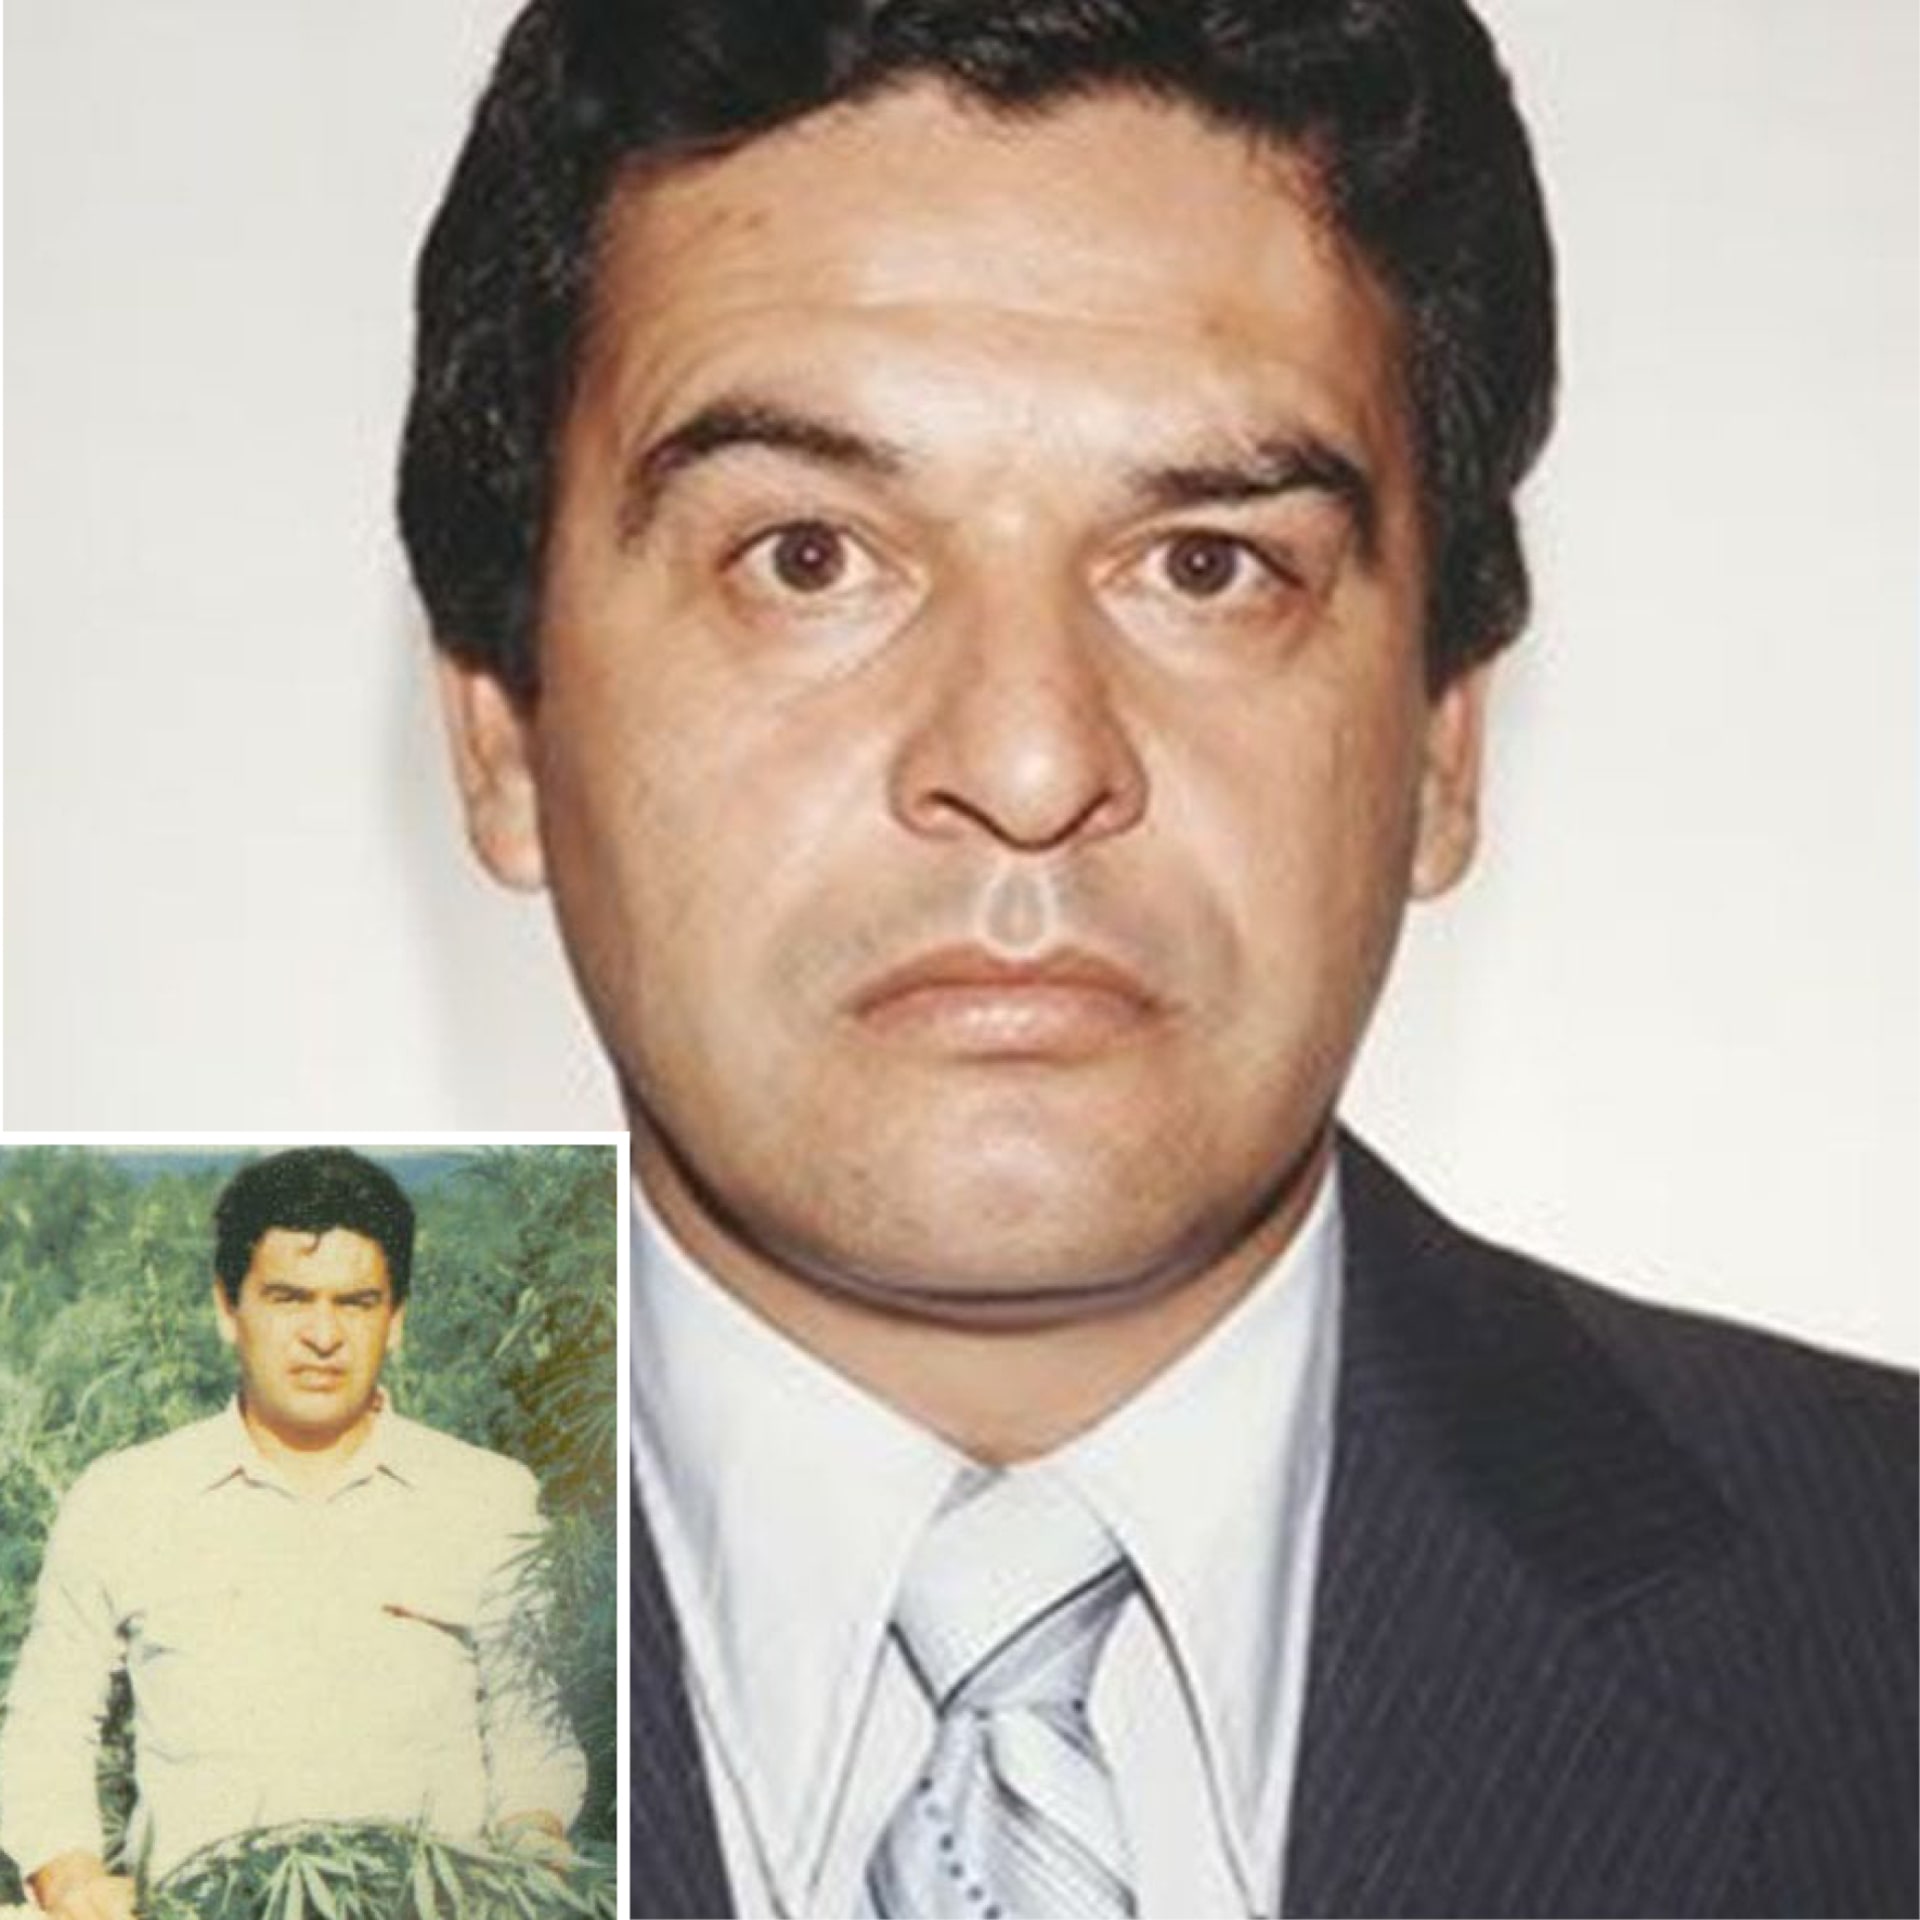 Mexické protidrogové složky při razii, na níž měl významný podíl Enrique Camarena Salazar, zlikvidovaly neuvěřitelných 10 tisíc tun marihuany. Akce nezůstala bez odezvy ze strany drogového kartelu. Agent DEA Camarena byl unesen, brutálně mučen a zavražděn